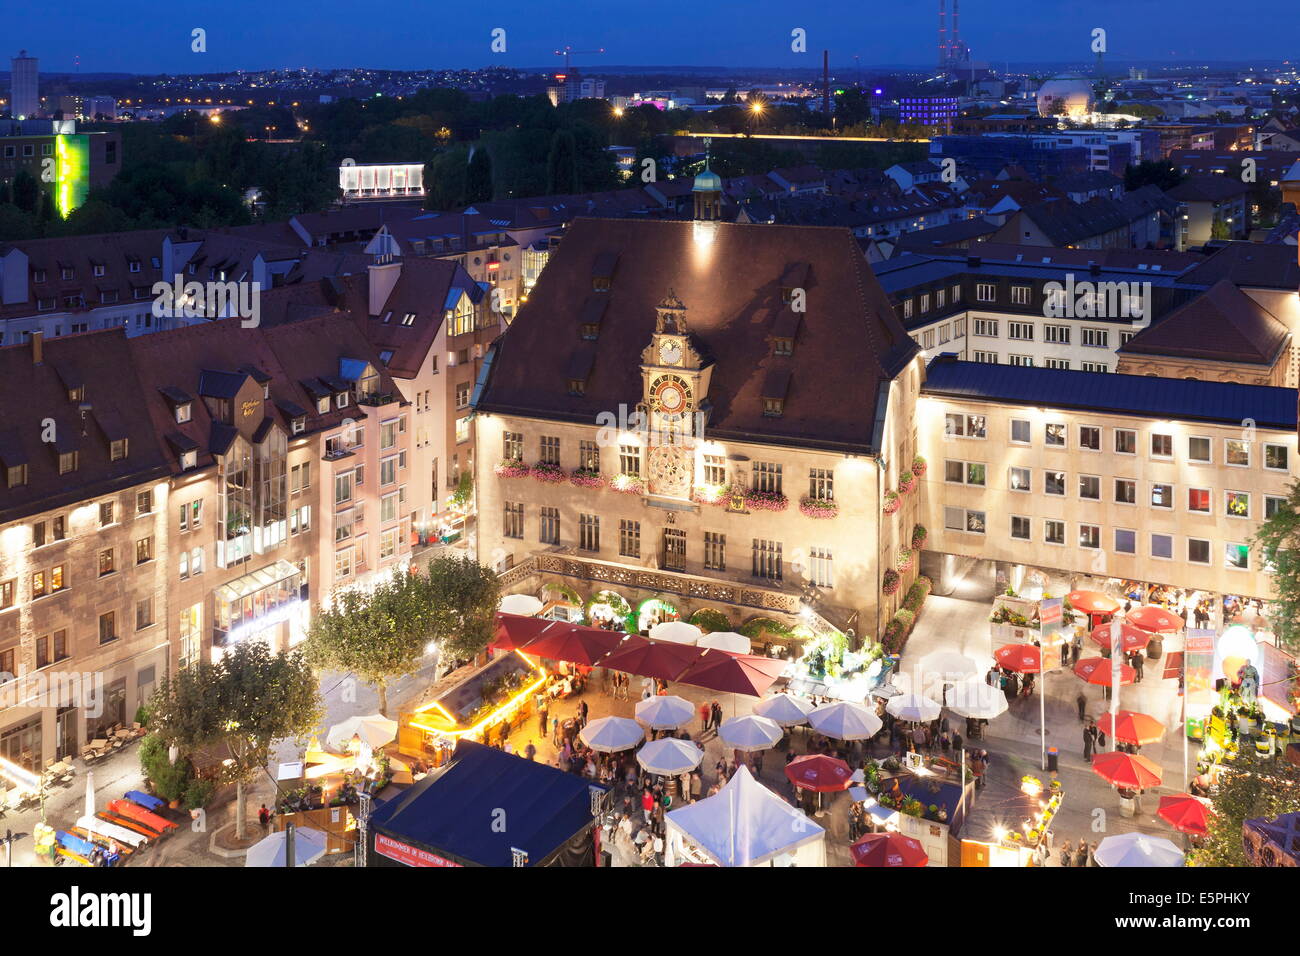 Festival des Weins im Marktplatz und Rathaus, Heilbronn, Baden-Württemberg, Deutschland, Europa Stockfoto